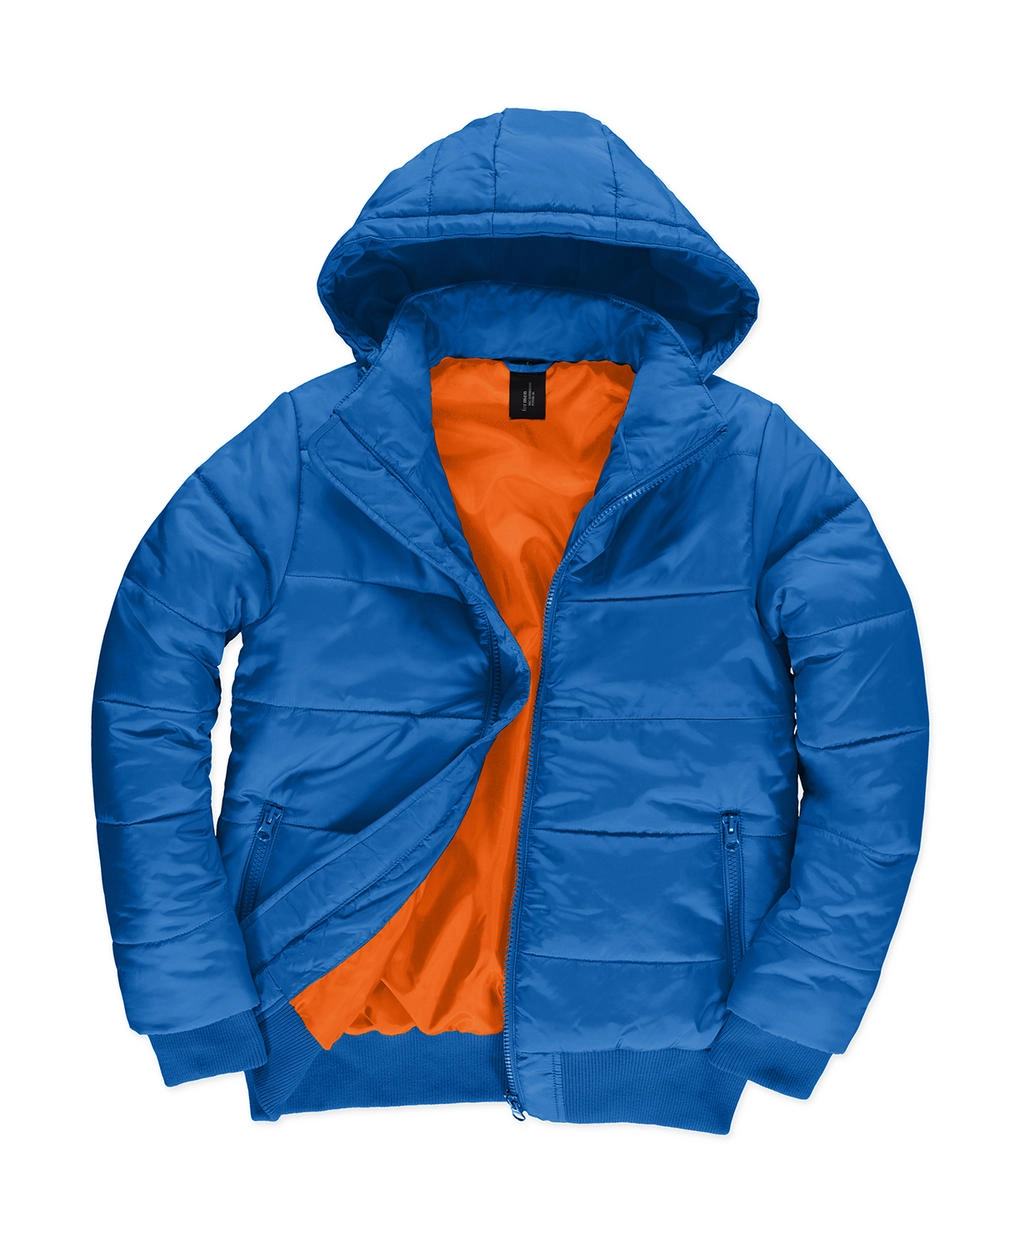 Superhood/men Jacket zum Besticken und Bedrucken in der Farbe Royal/Neon Orange mit Ihren Logo, Schriftzug oder Motiv.